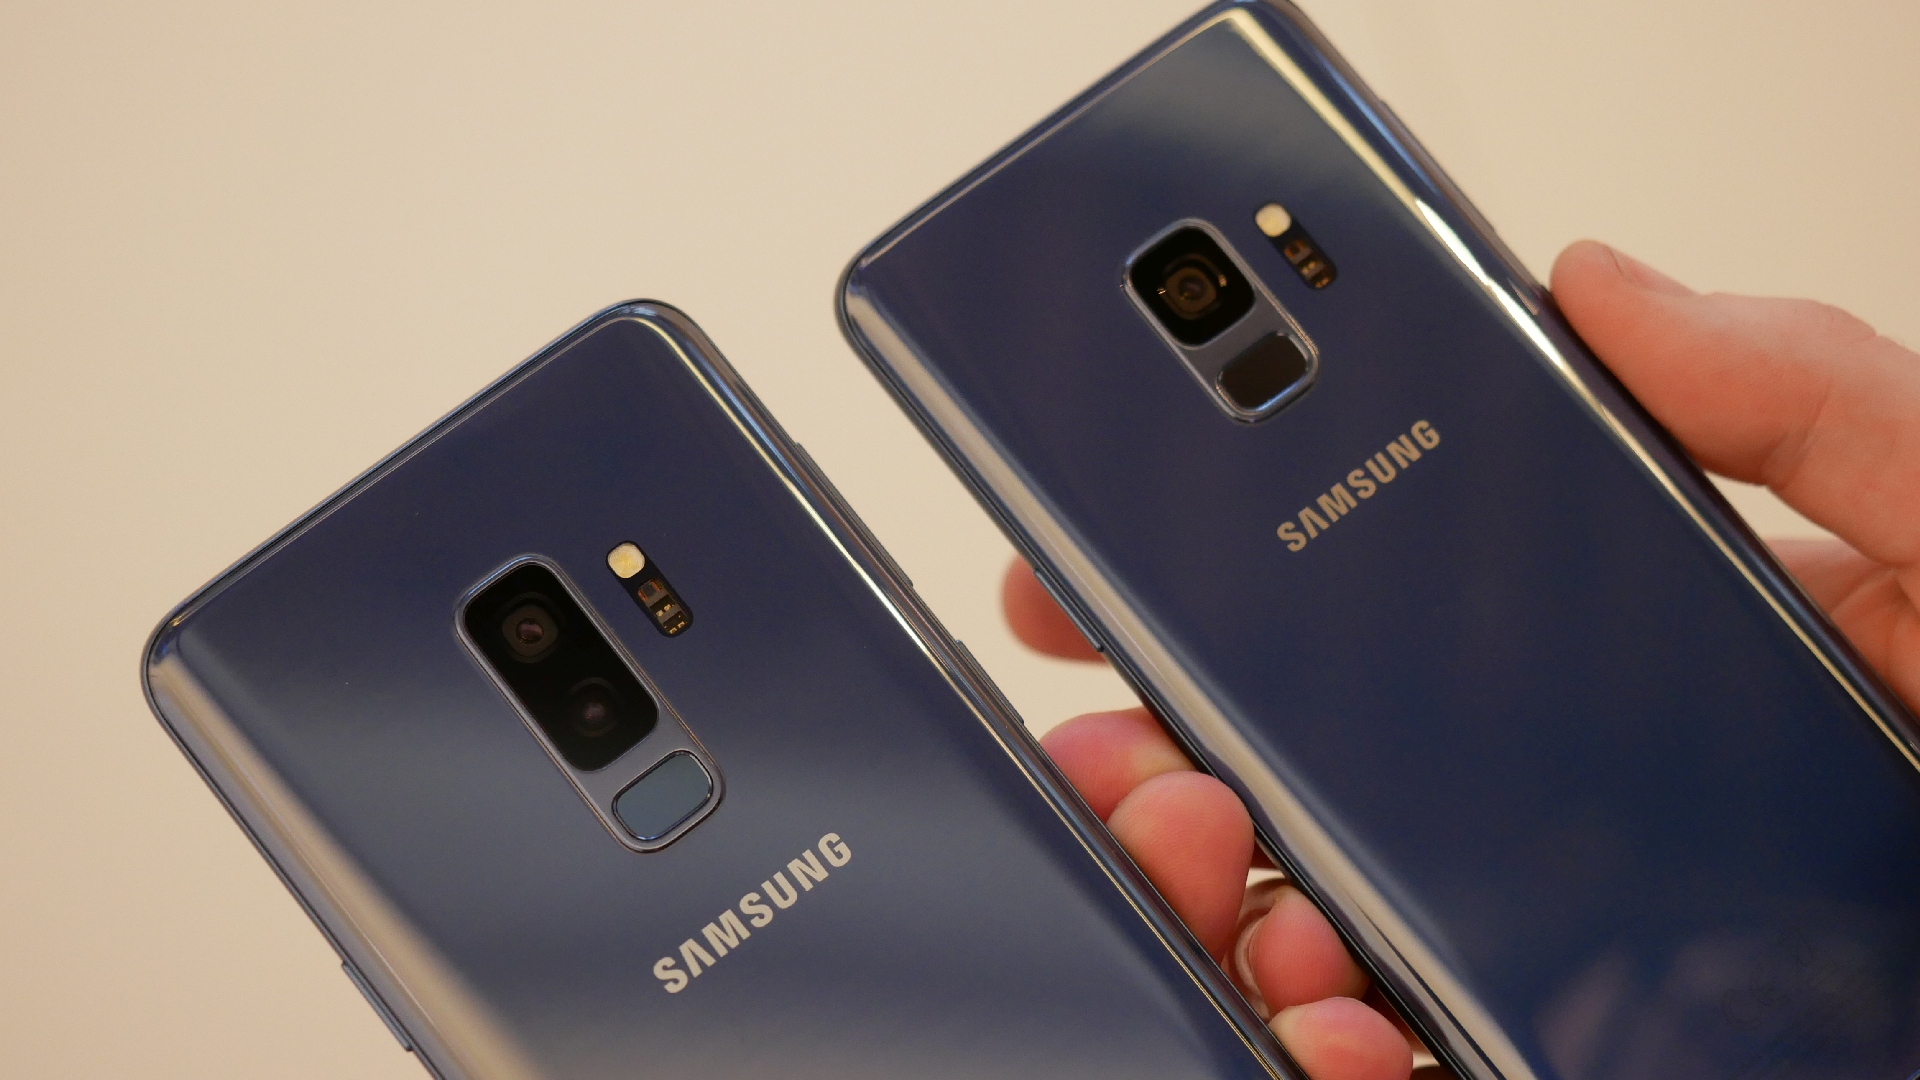 Wiederherstellen gelöschter Kontakte/Textnachrichten vom Samsung Galaxy S9/S9+